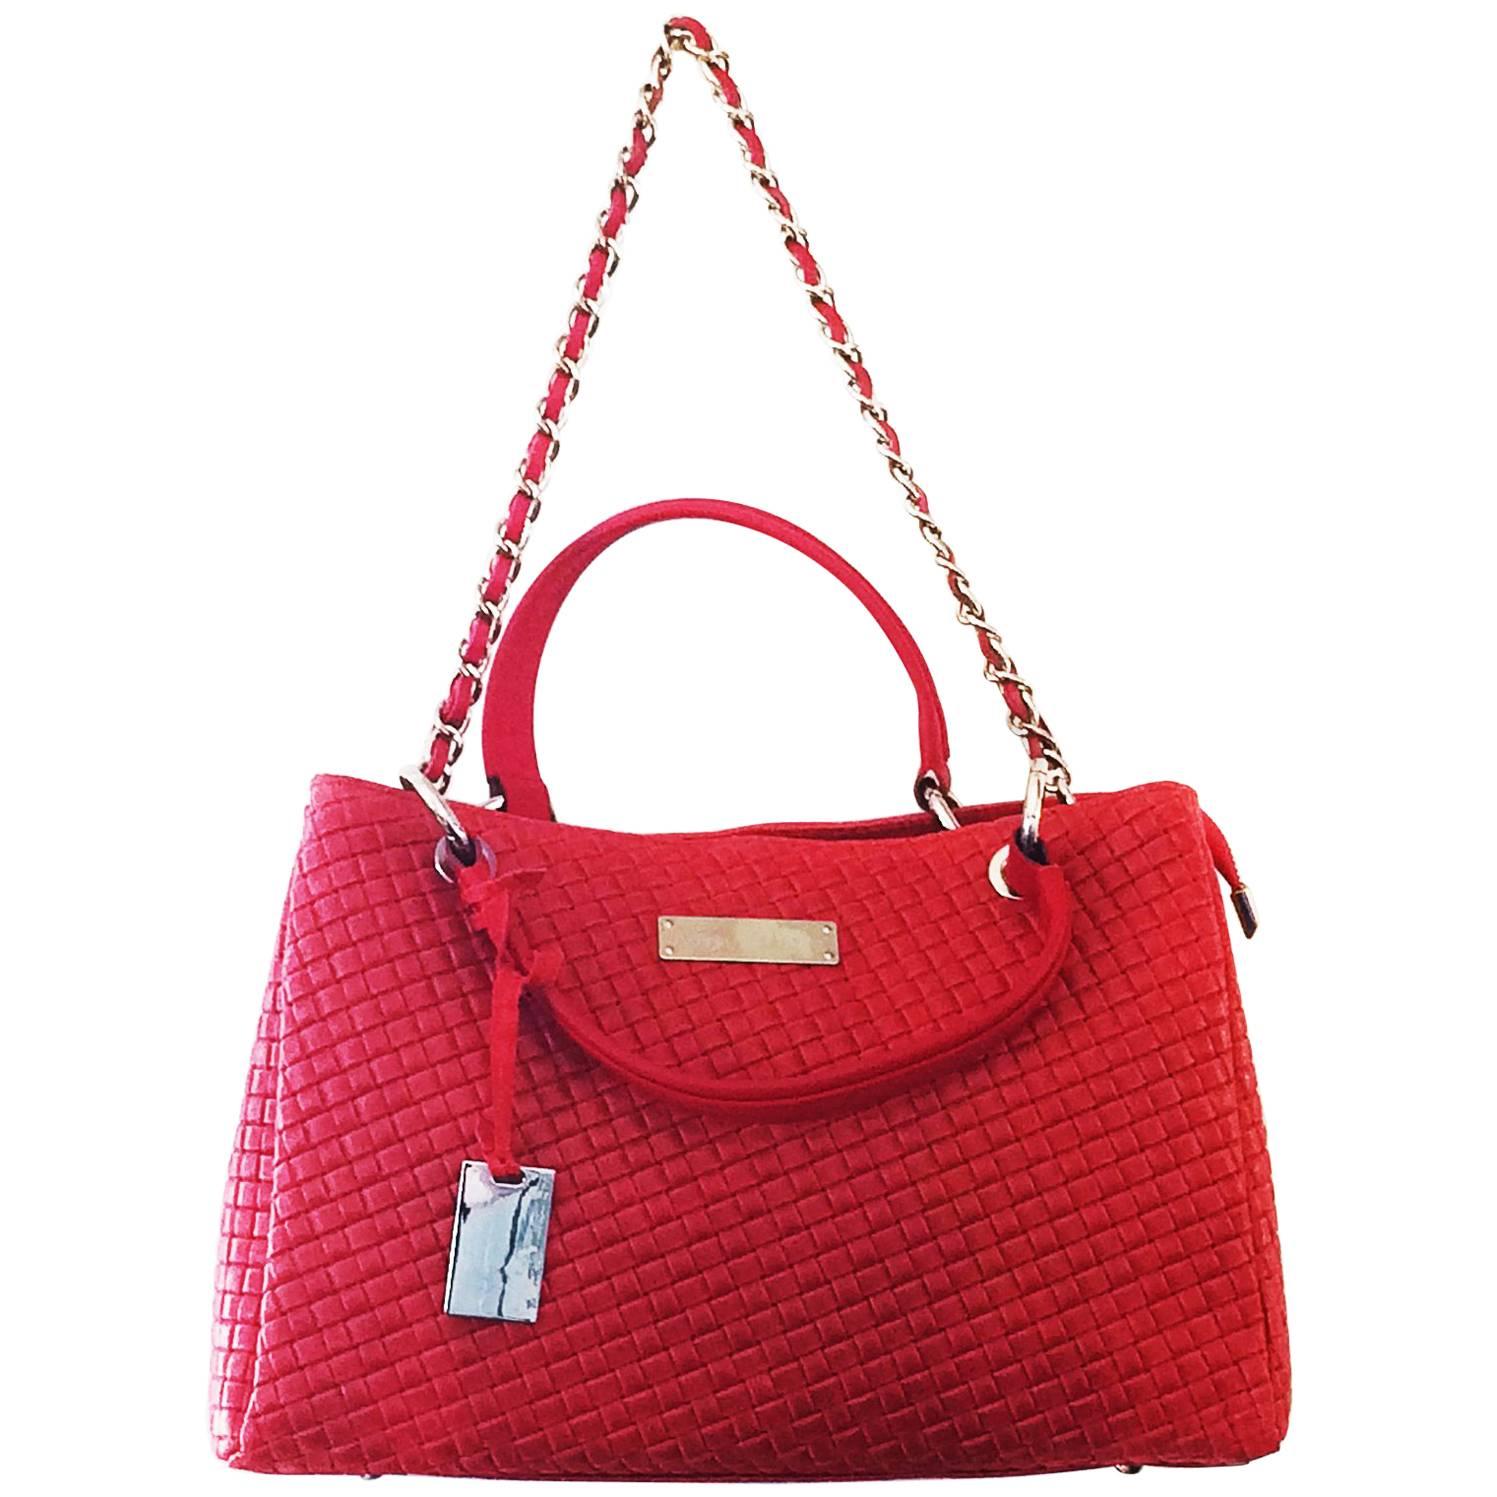 Trussardi Red Leather handbag or shoulder bag